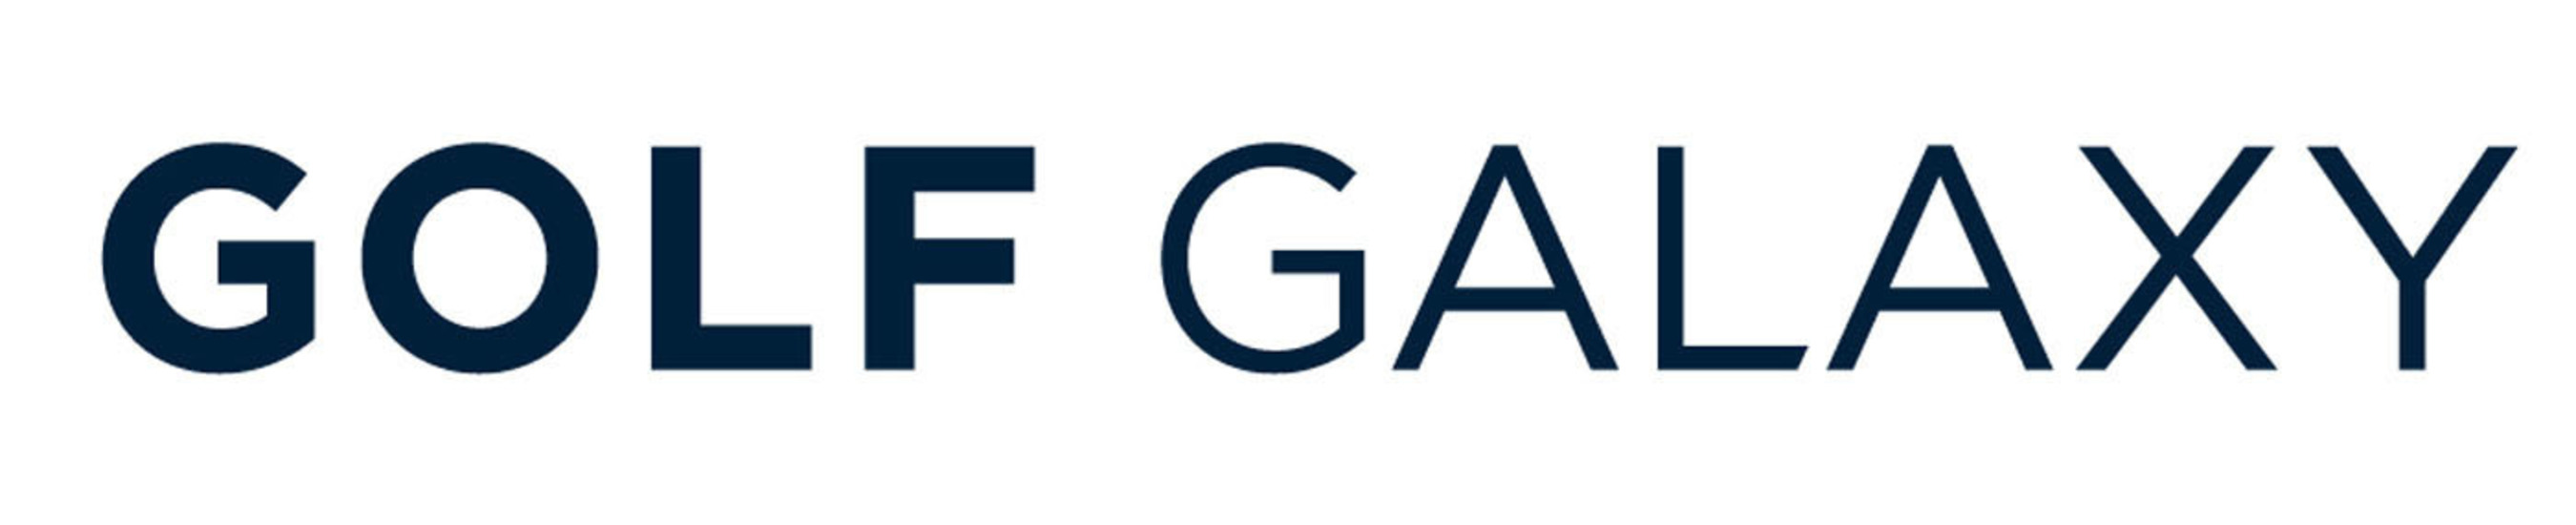 Golf Galaxy logo. (PRNewsFoto/Golf Galaxy) (PRNewsFoto/GOLF GALAXY)